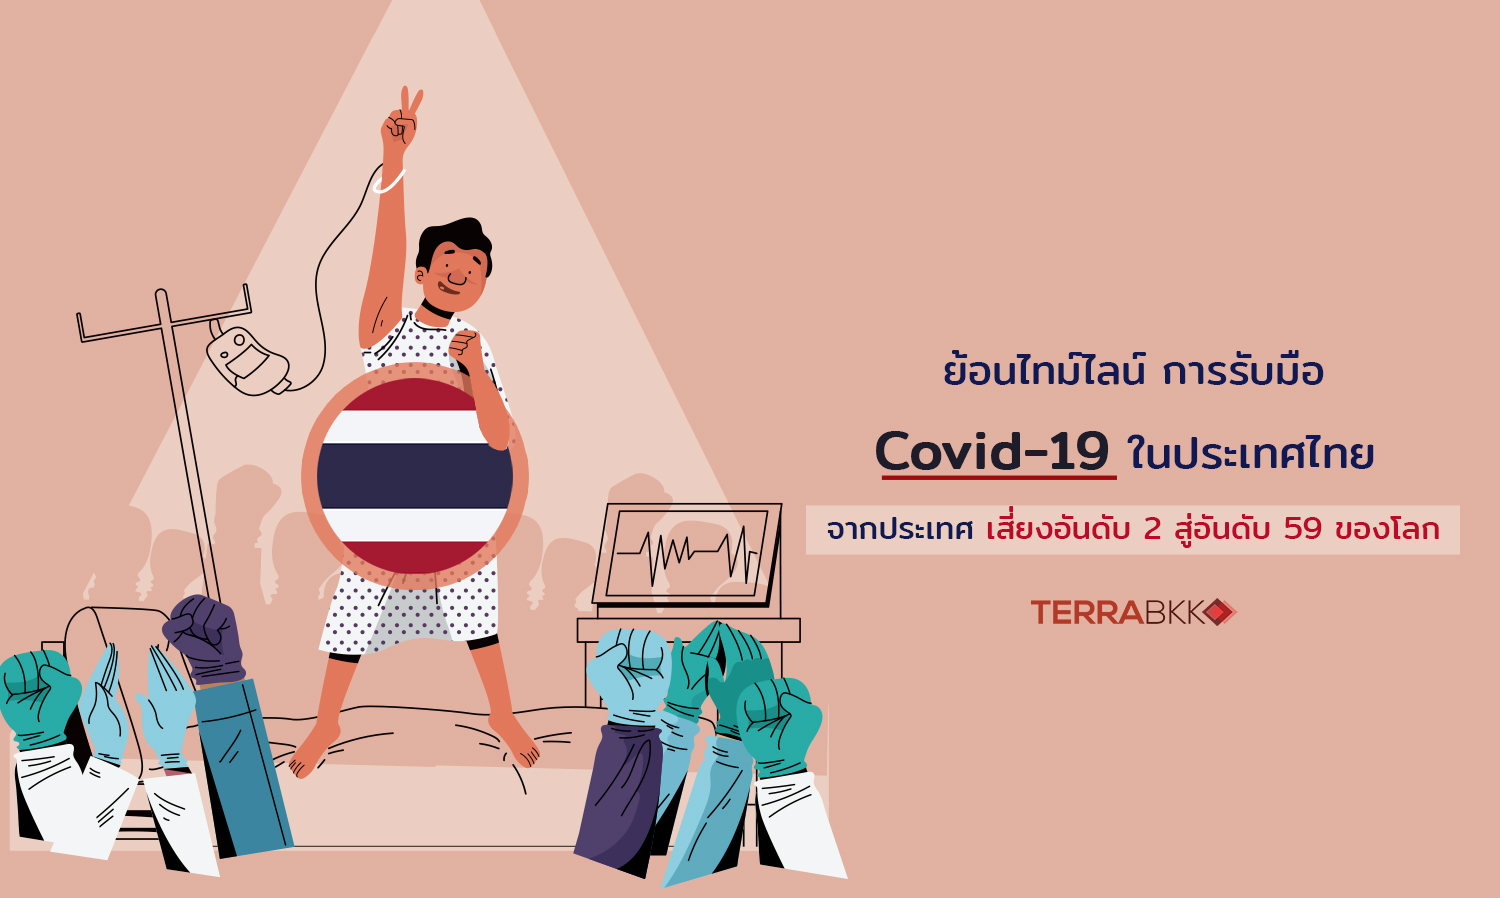 ย้อนไทม์ไลน์การรับมือ Covid-19 ในประเทศไทย จากประเทศเสี่ยงอันดับ 2 สู่อันดับ 59